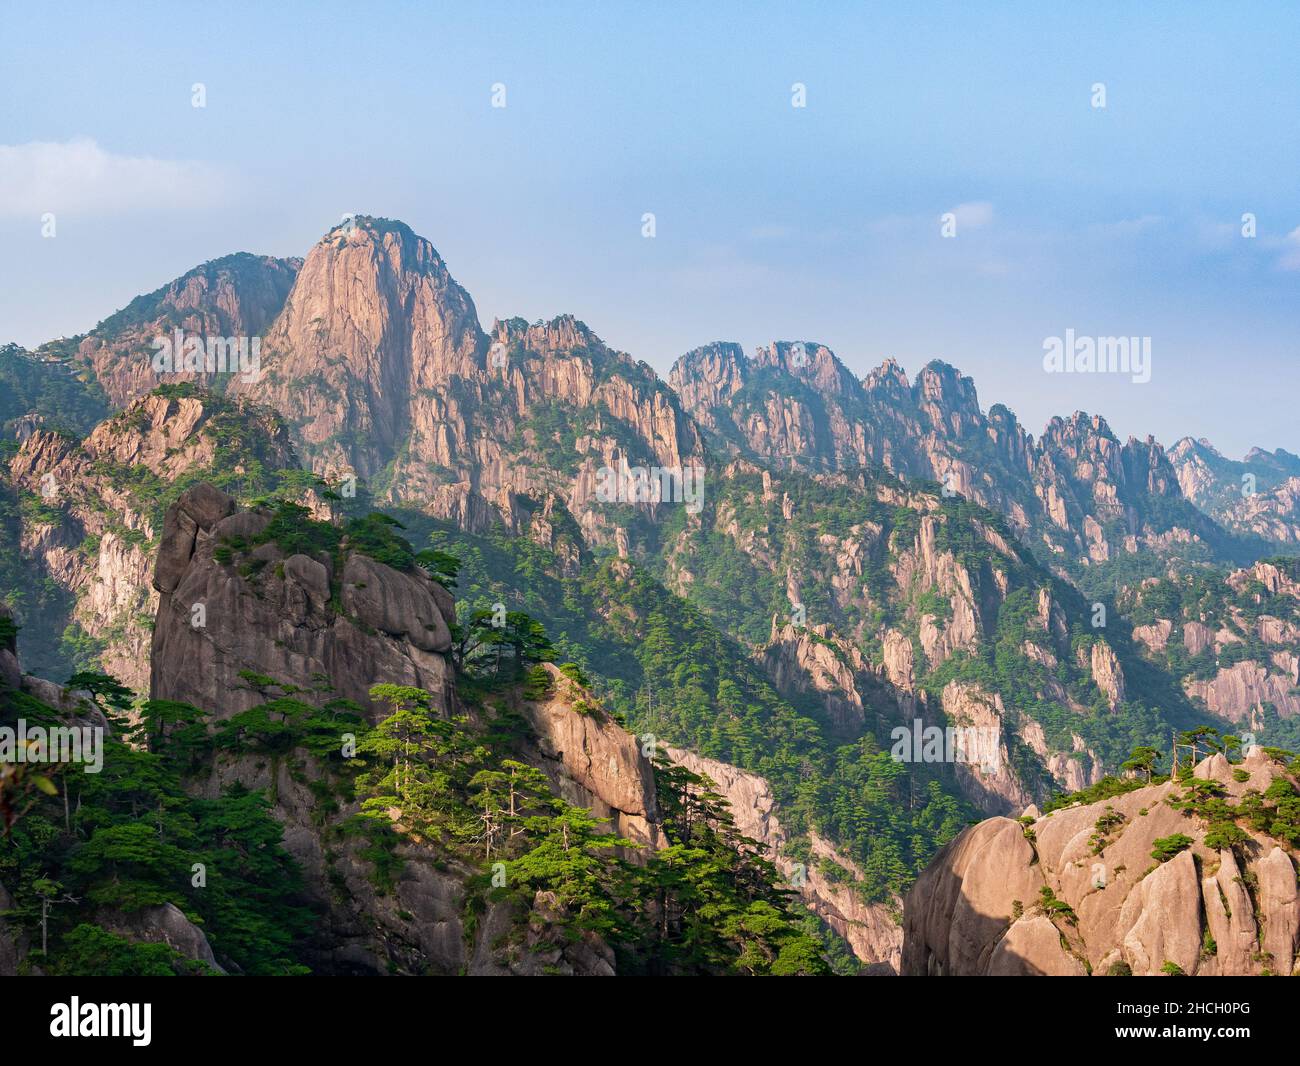 Ciel bleu au-dessus du sommet des montagnes de Huangshan, montagnes jaunes, Anhui, Huangshan, Chine,Asie, photo, patrimoine mondial de l'UNESCO Banque D'Images